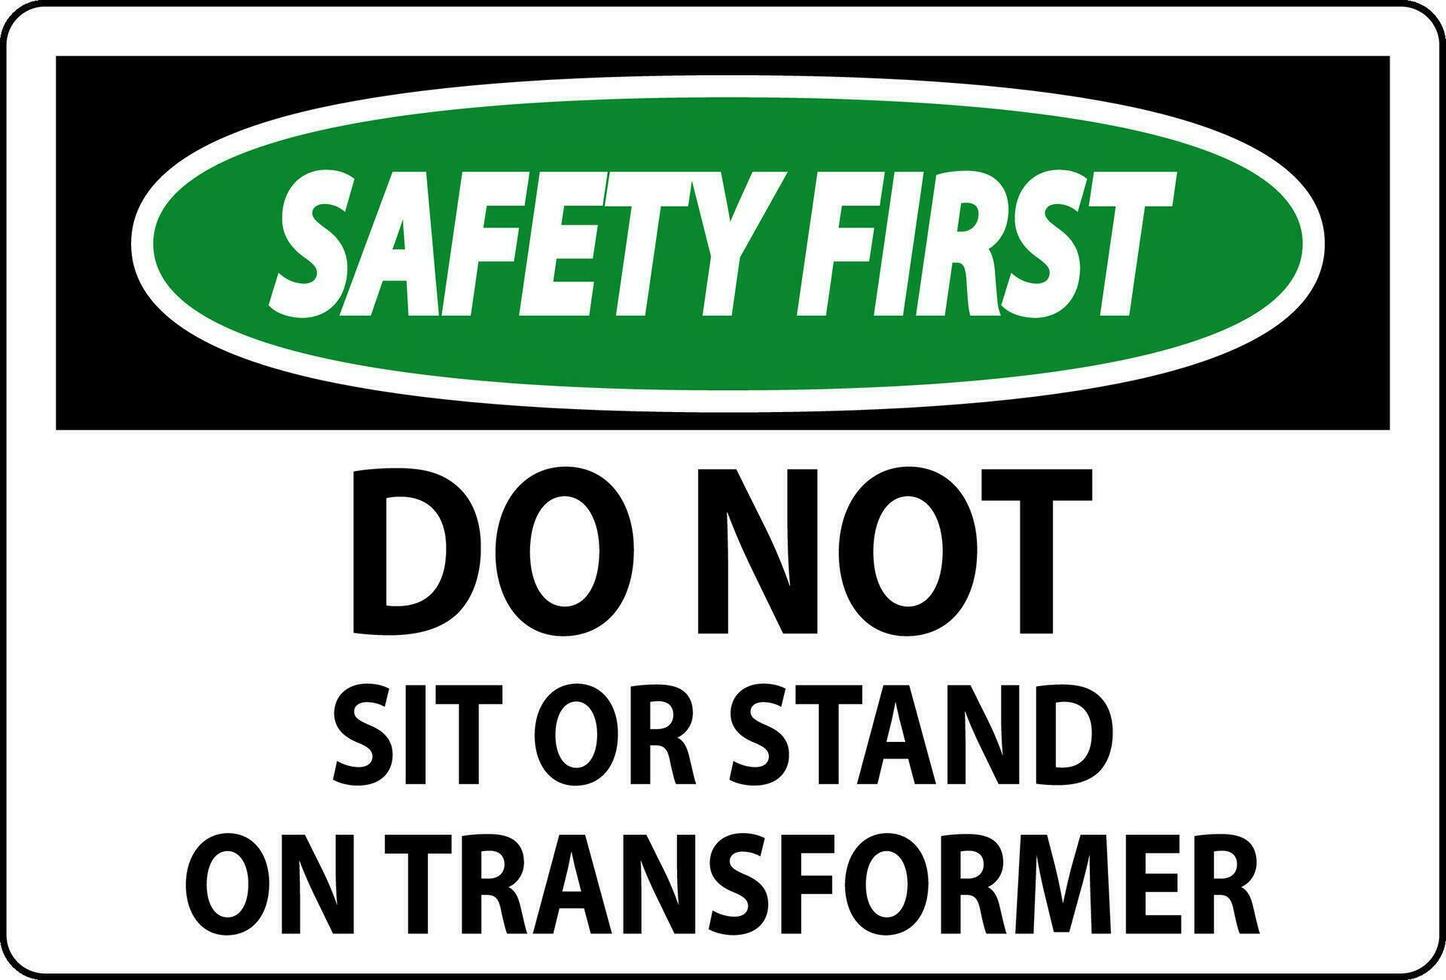 segurança primeiro placa - Faz não sentar ou ficar de pé em transformador vetor